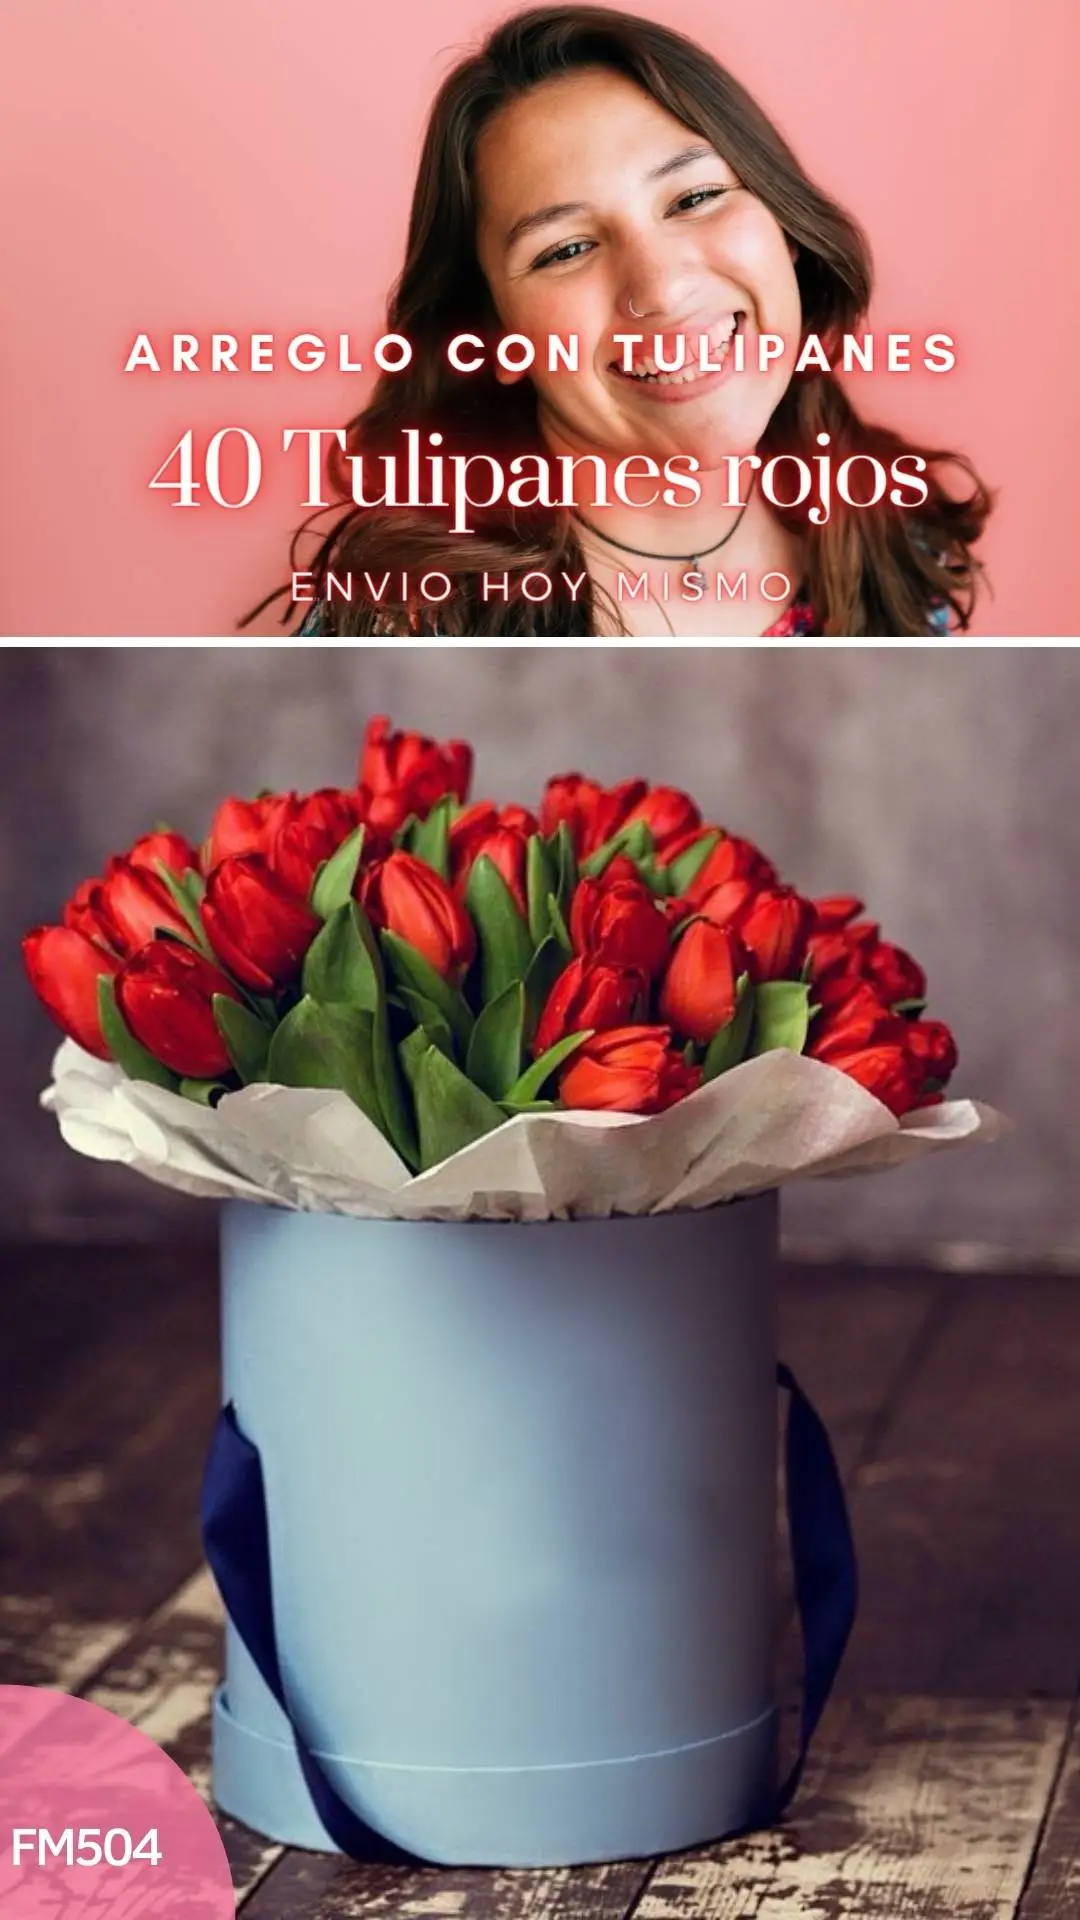 Caja con 40 tulipanes rojos de amor